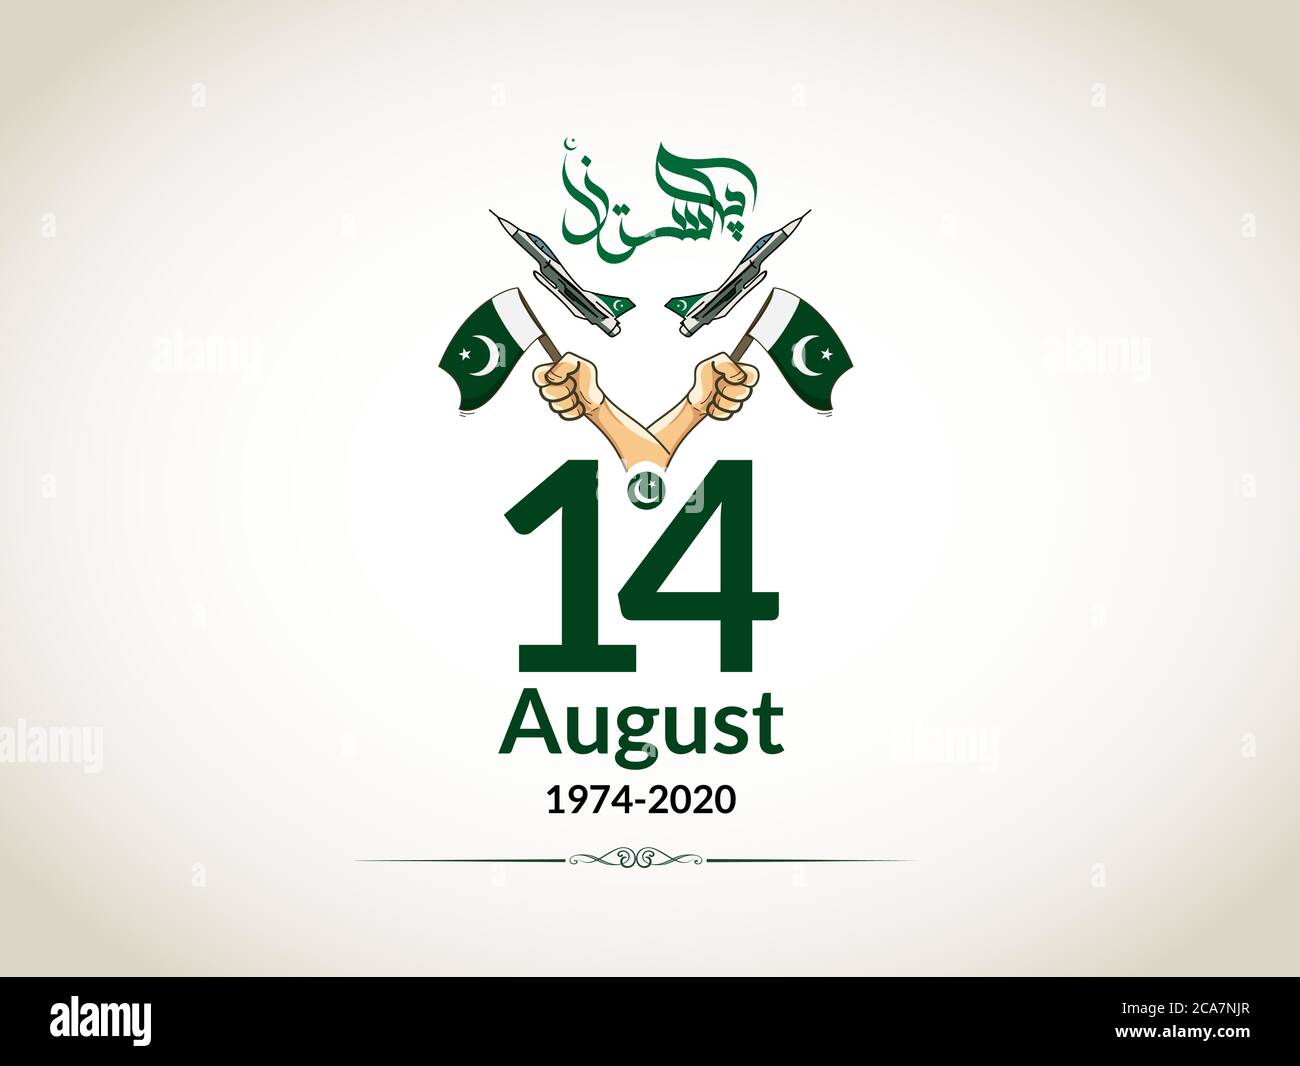 14. August Pakistans Unabhängigkeitstag. 1947 bis 2020 am besten am Unabhängigkeitstag von Pakistan Shirts und Aufkleber zu verwenden. Stock Vektor